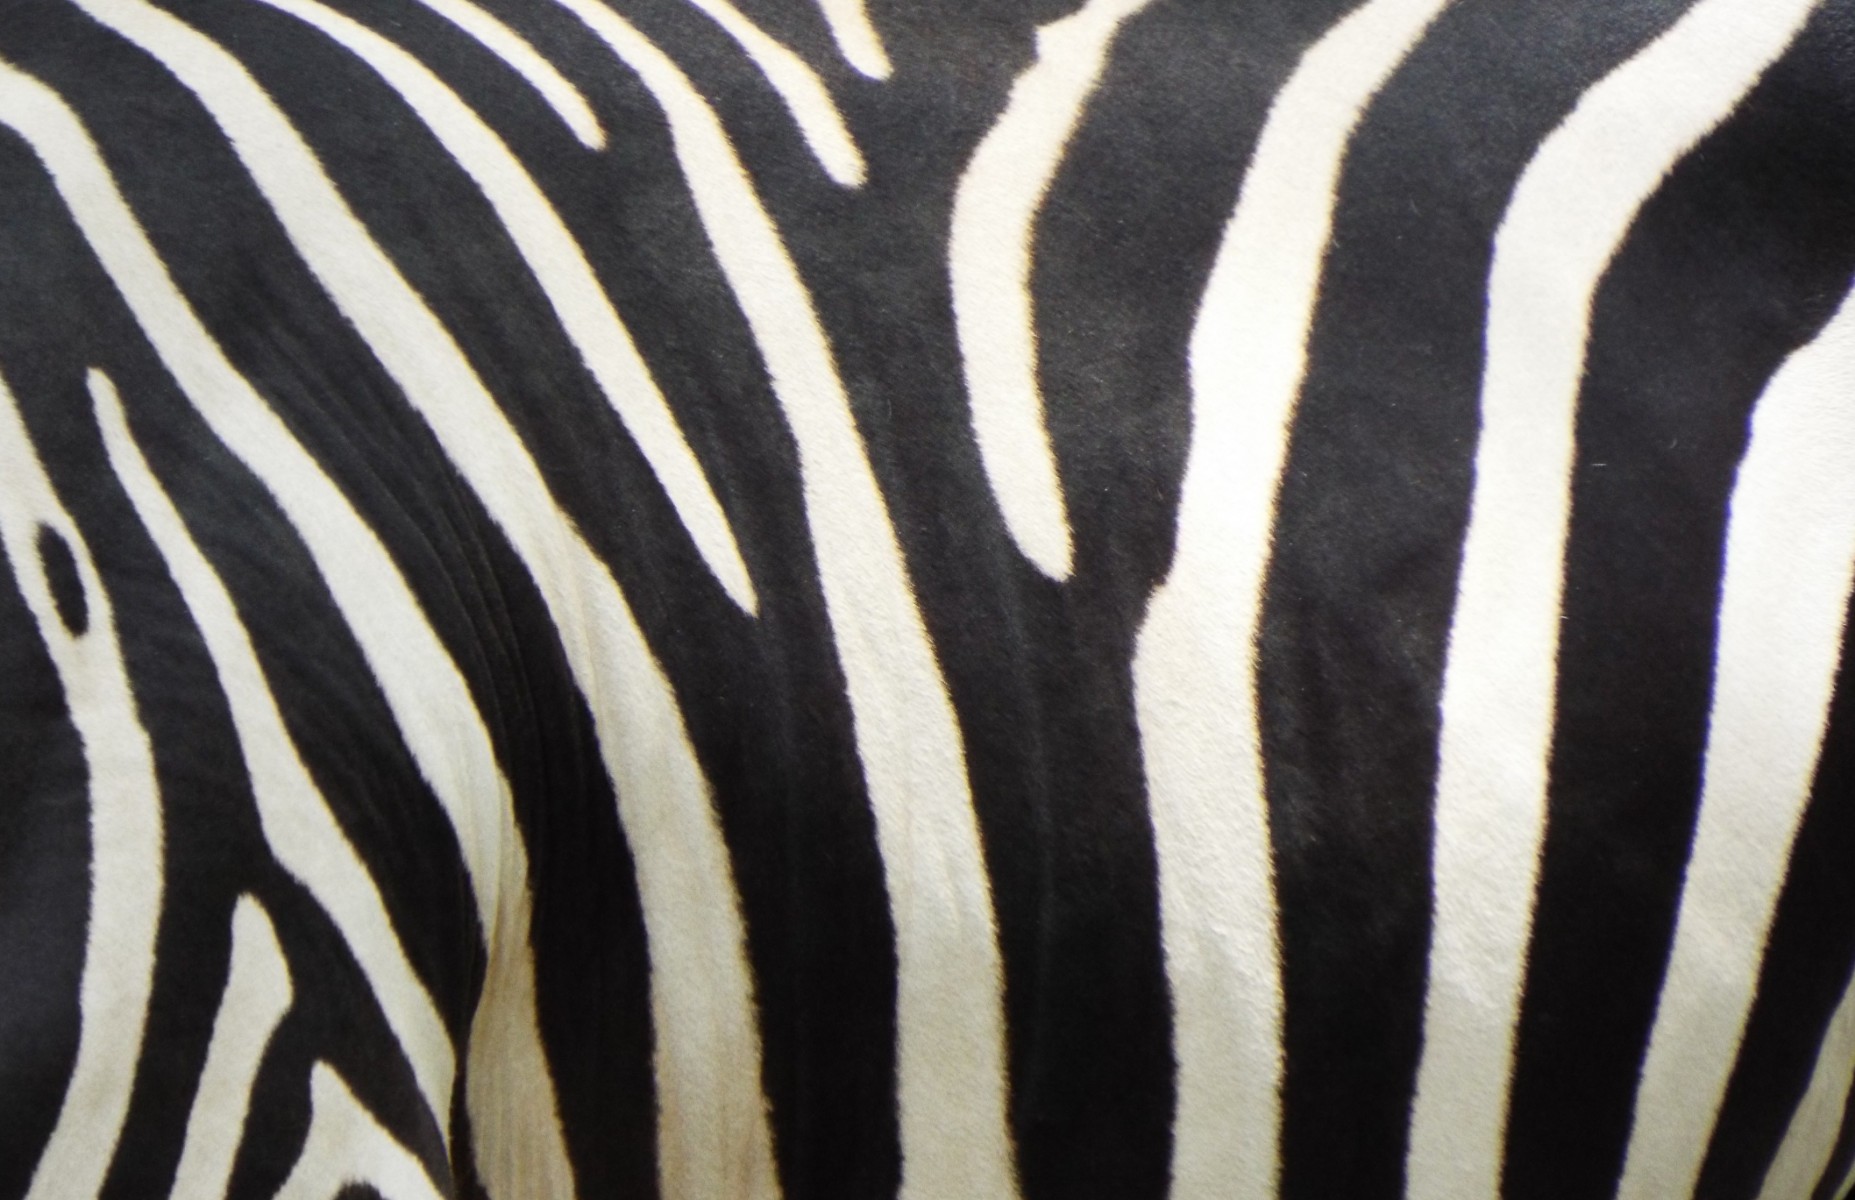 Zebra skin